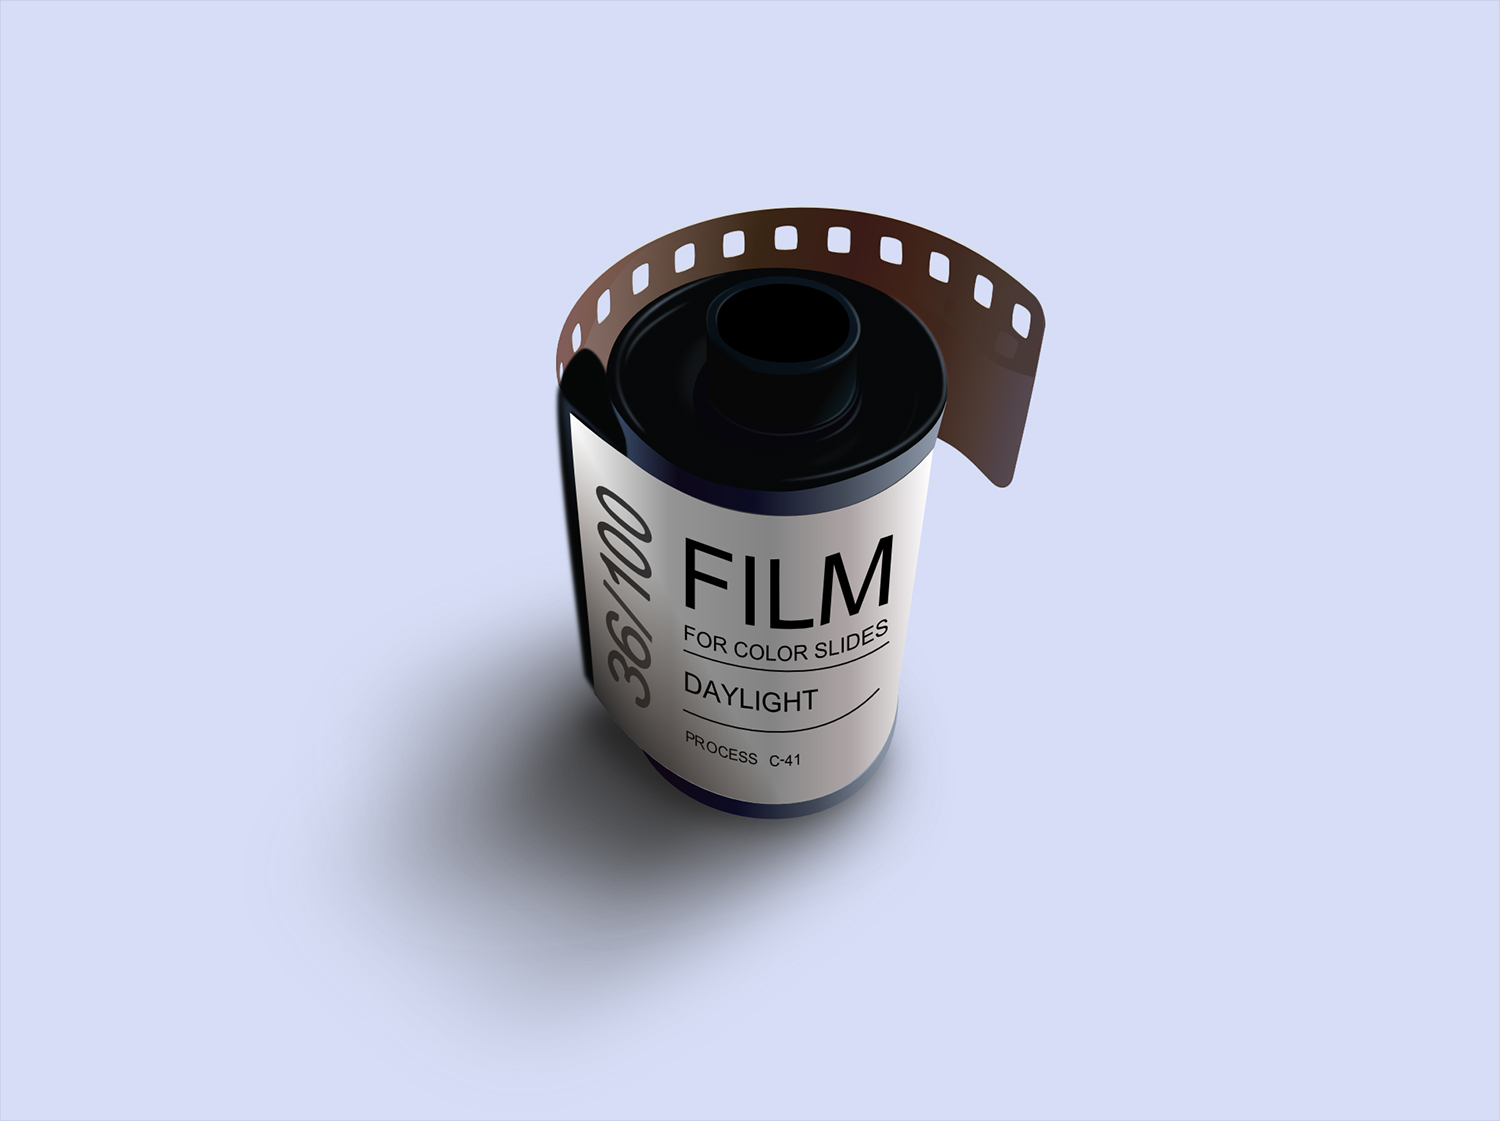 Lightroom tips for emulating film